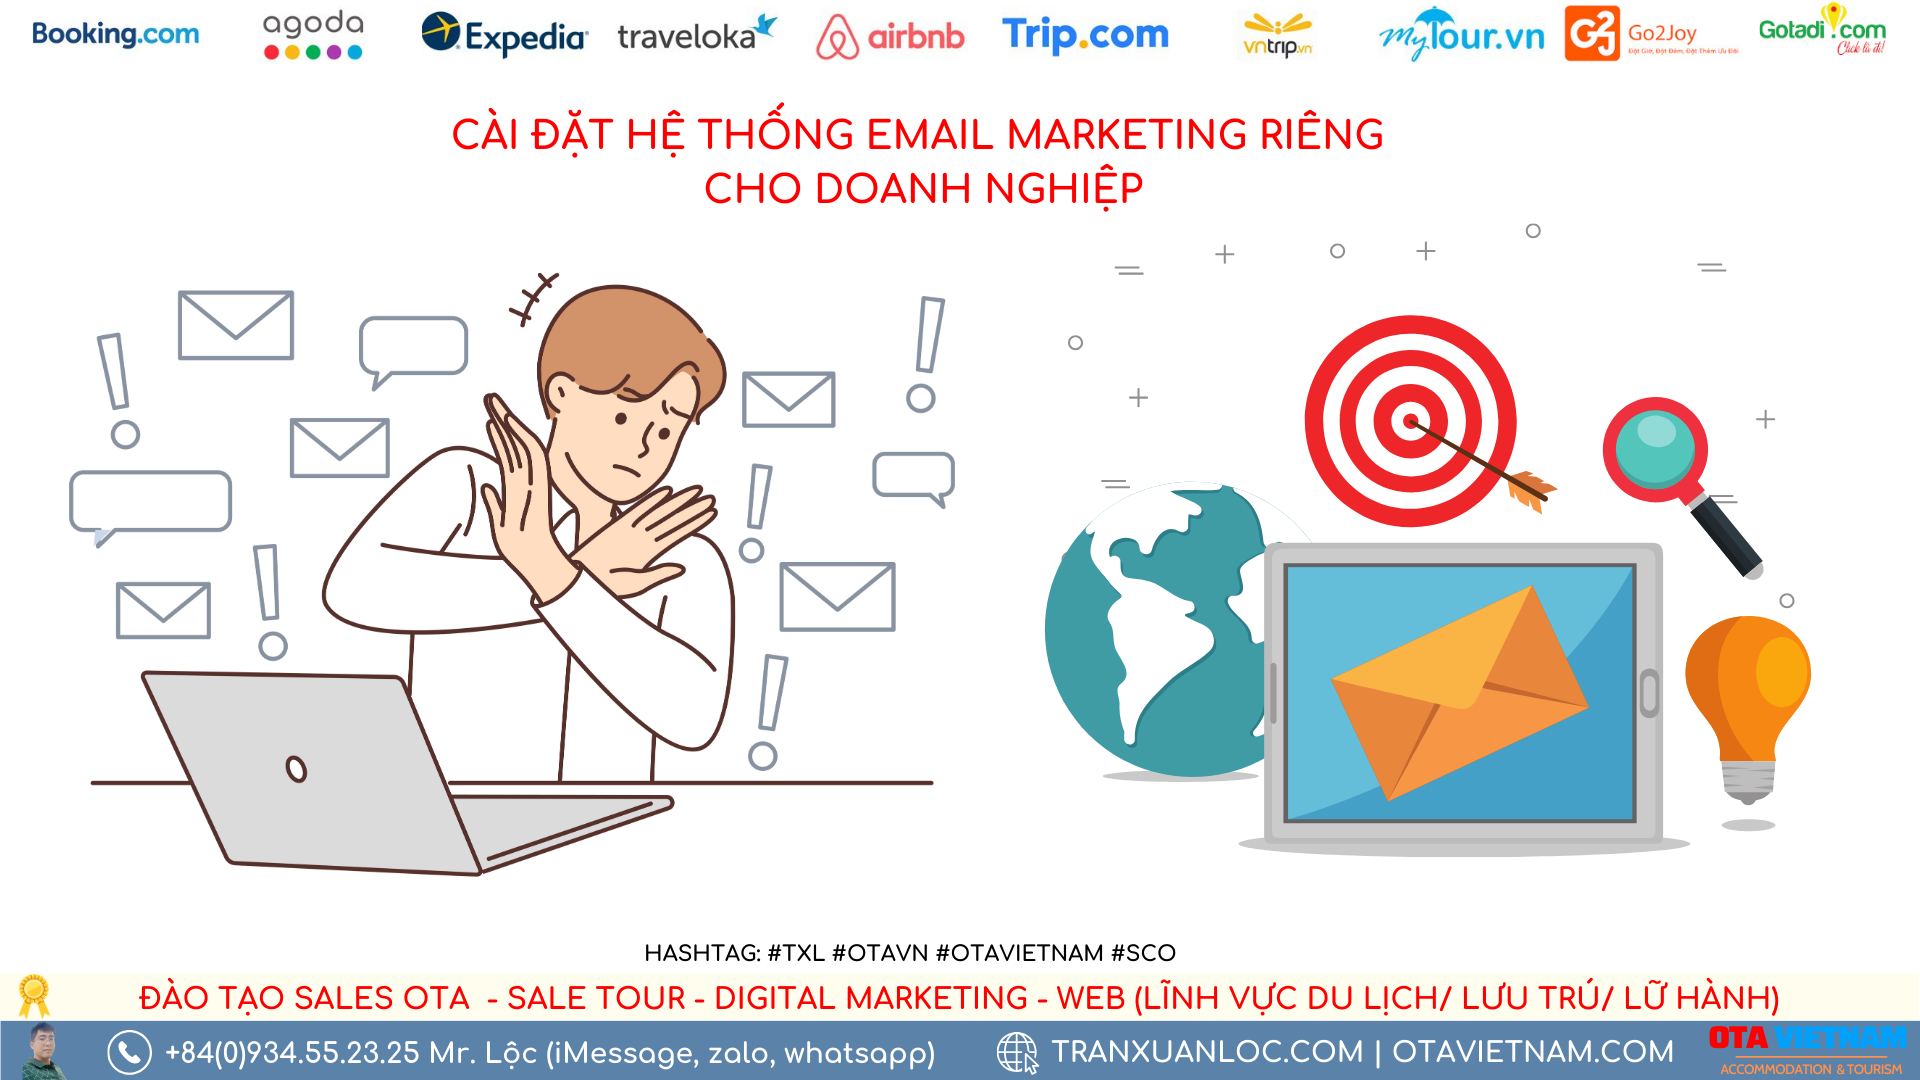 Otavn Txl Dang Ky Goi Dich Vu Cai Dat He Thong Email Marketing Rieng Cho Doanh Nghiep (3)